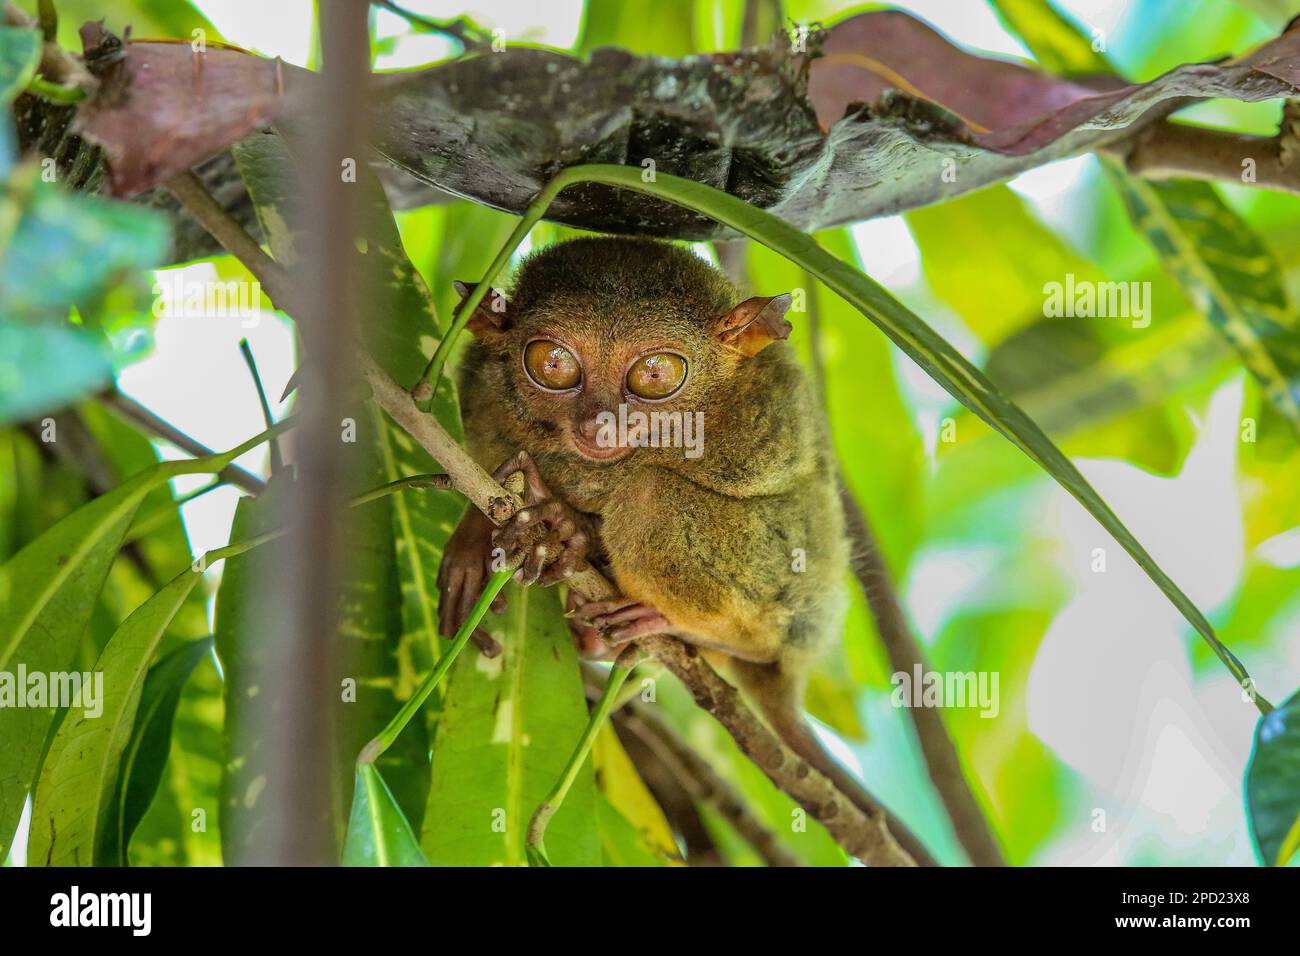 Philippin tarsier : un primate timide se suicide lorsqu'il est stressé en captivité. Île de Bohol, faune sauvage des Philippines, protection des espèces menacées Banque D'Images